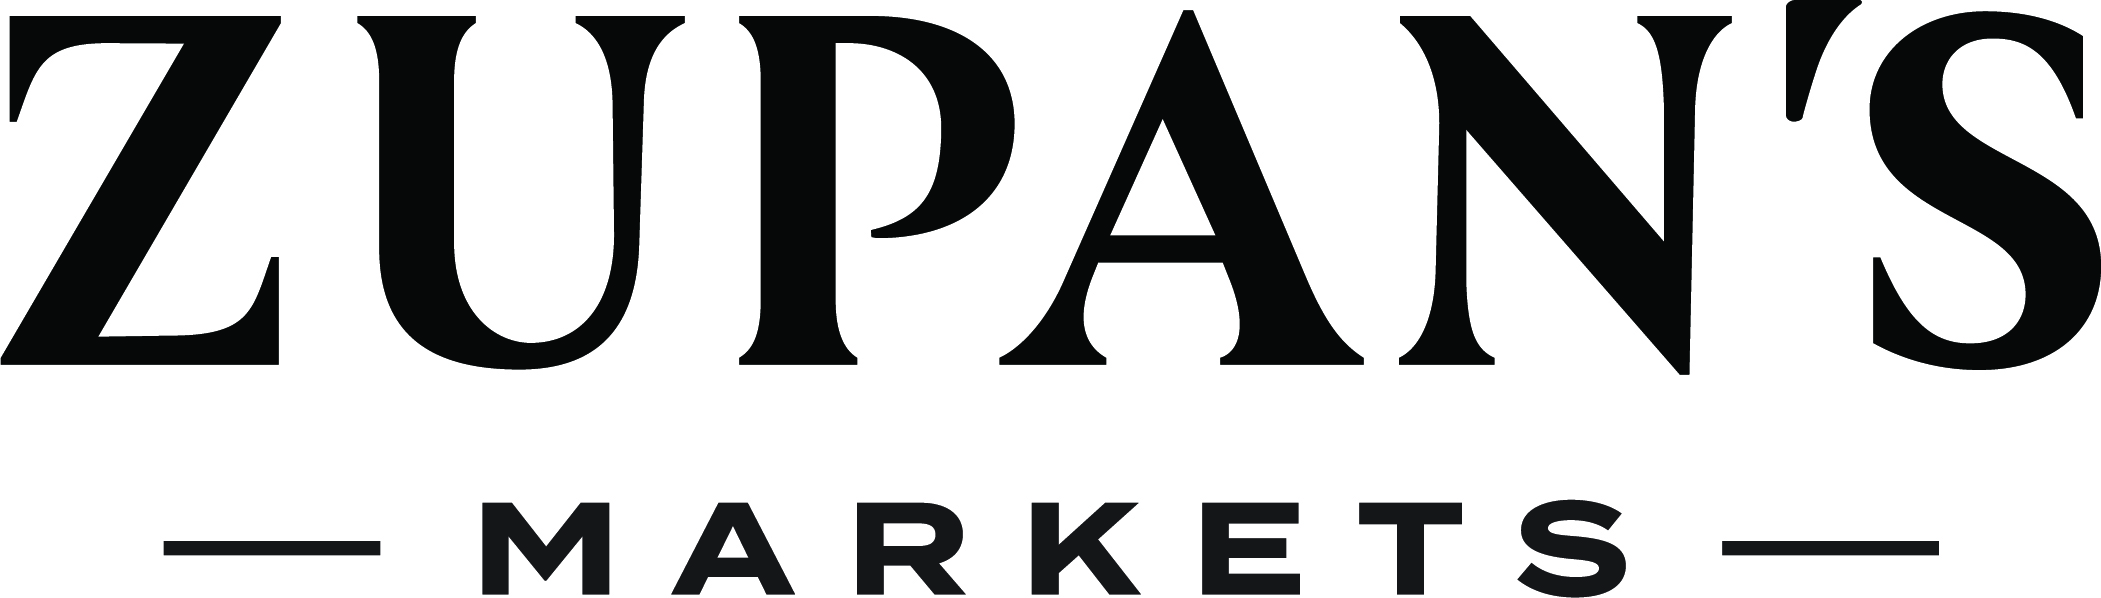 Zupans Markets